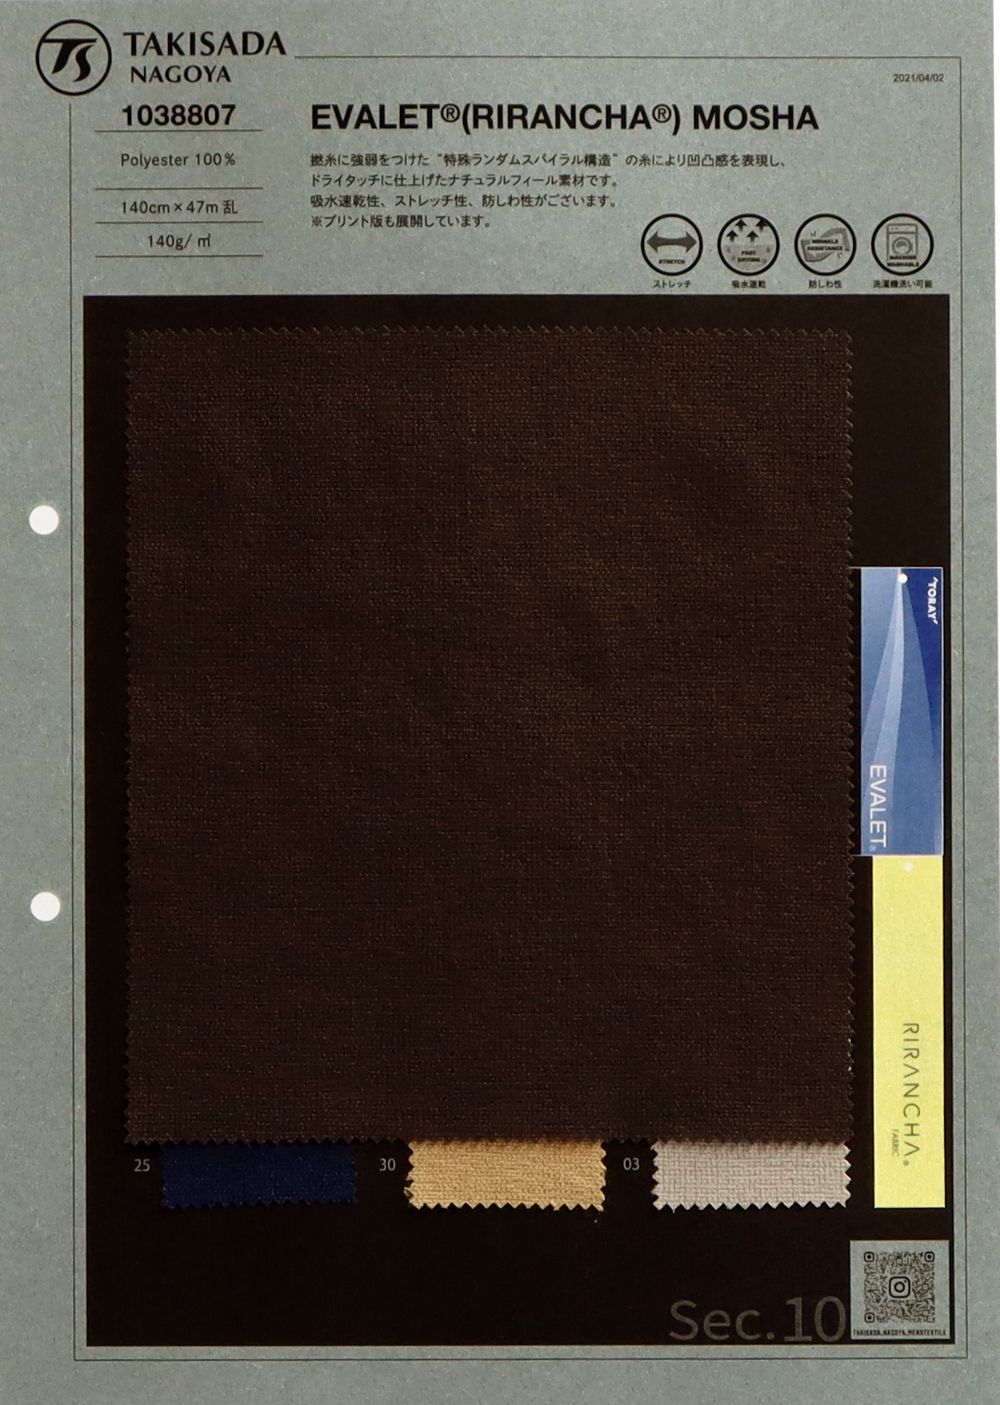 1038807 EVALET & Reg; Hopsack (Mocha)[Textile / Fabric] Takisada Nagoya